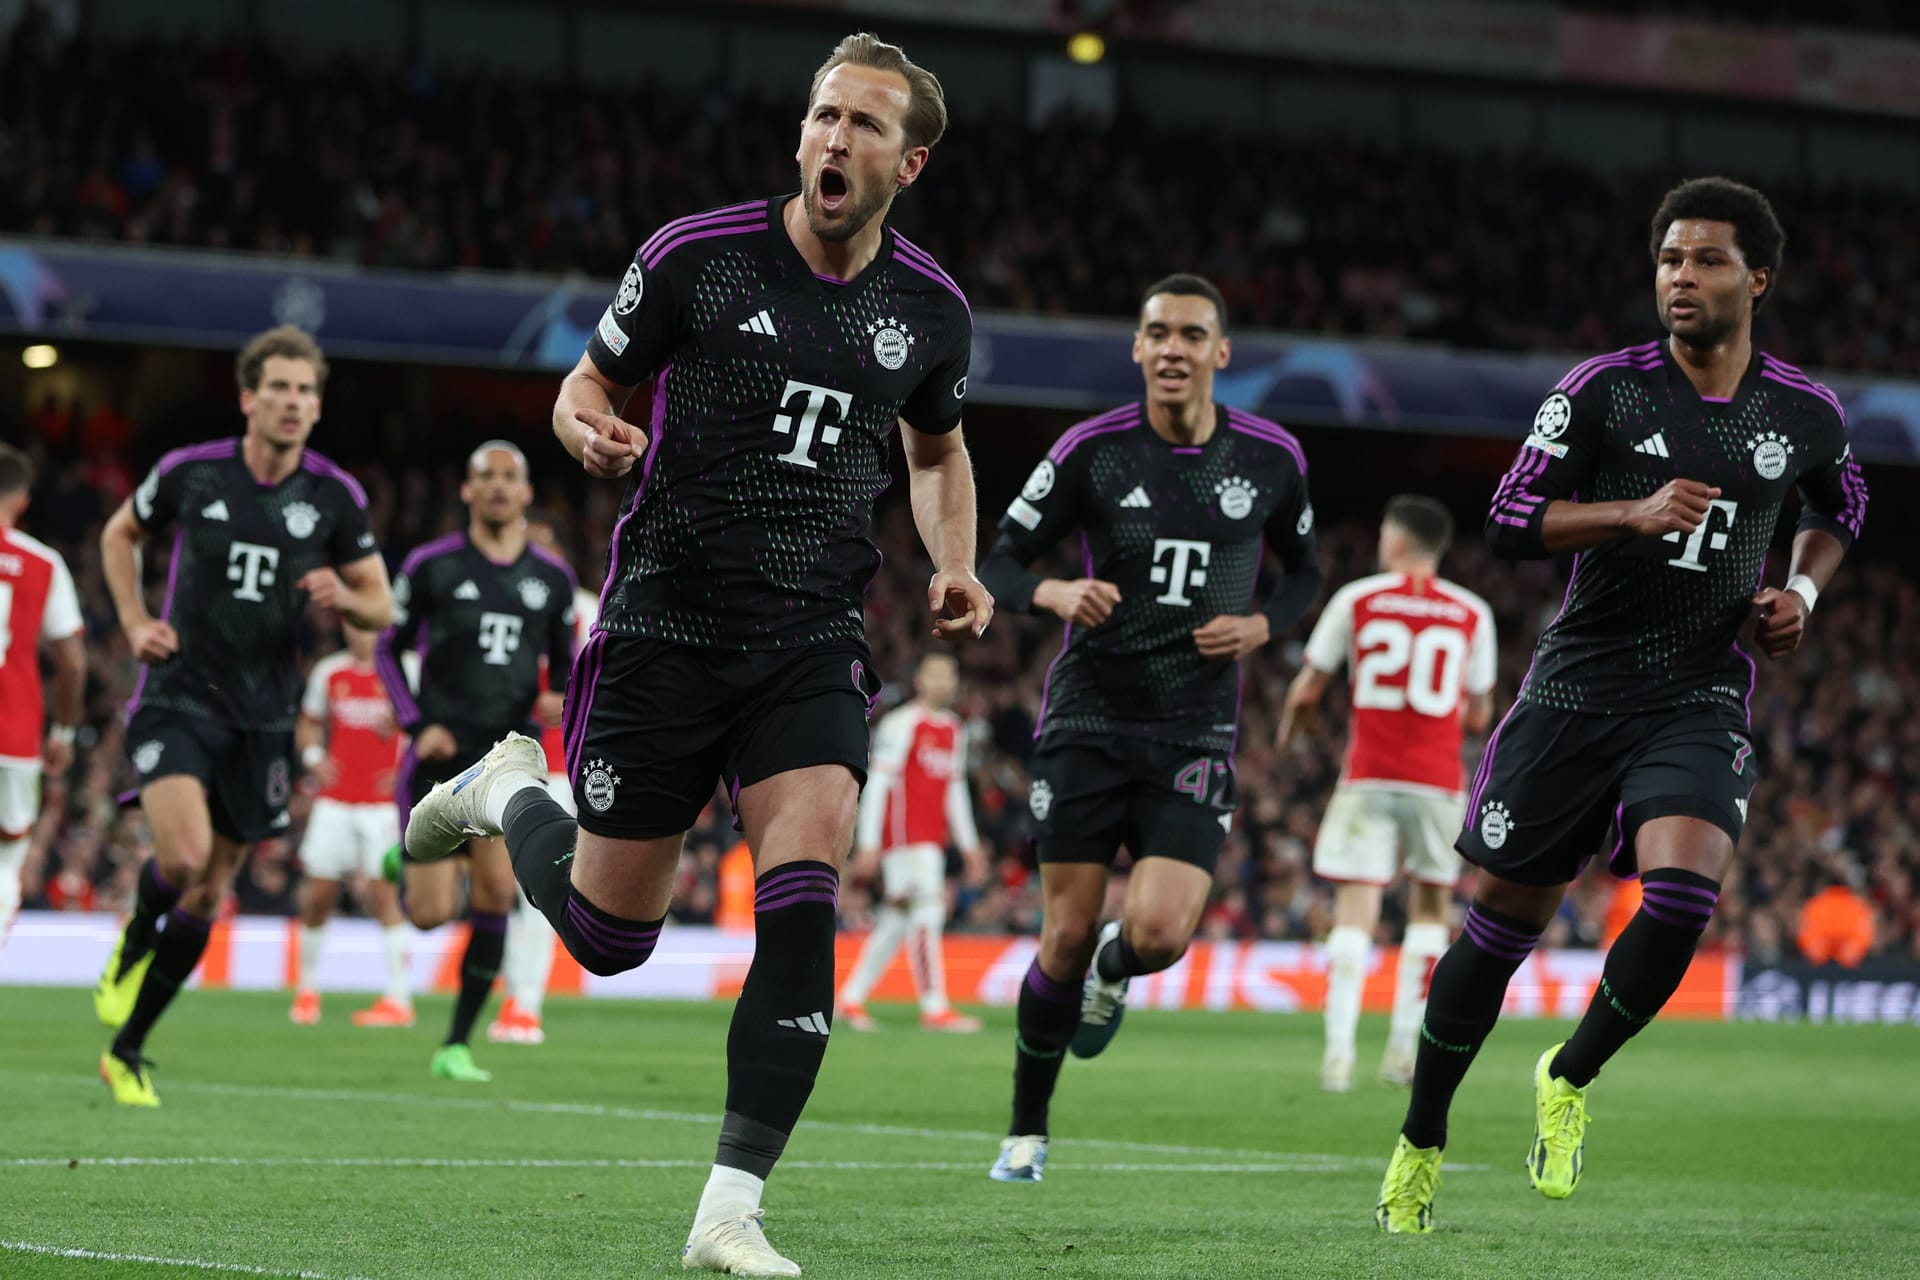 Der FC Bayern erkämpft sich im Viertelfinalhinspiel der Champions League ein 2:2 beim FC Arsenal. Die Münchner drehen dabei einen Rückstand, verspielen danach aber auch ihre Führung. Einige Bayern-Stars können in London überzeugen, einer entpuppt sich aber als Schwachstelle und kassiert deshalb Note fünf. Die Einzelkritik.